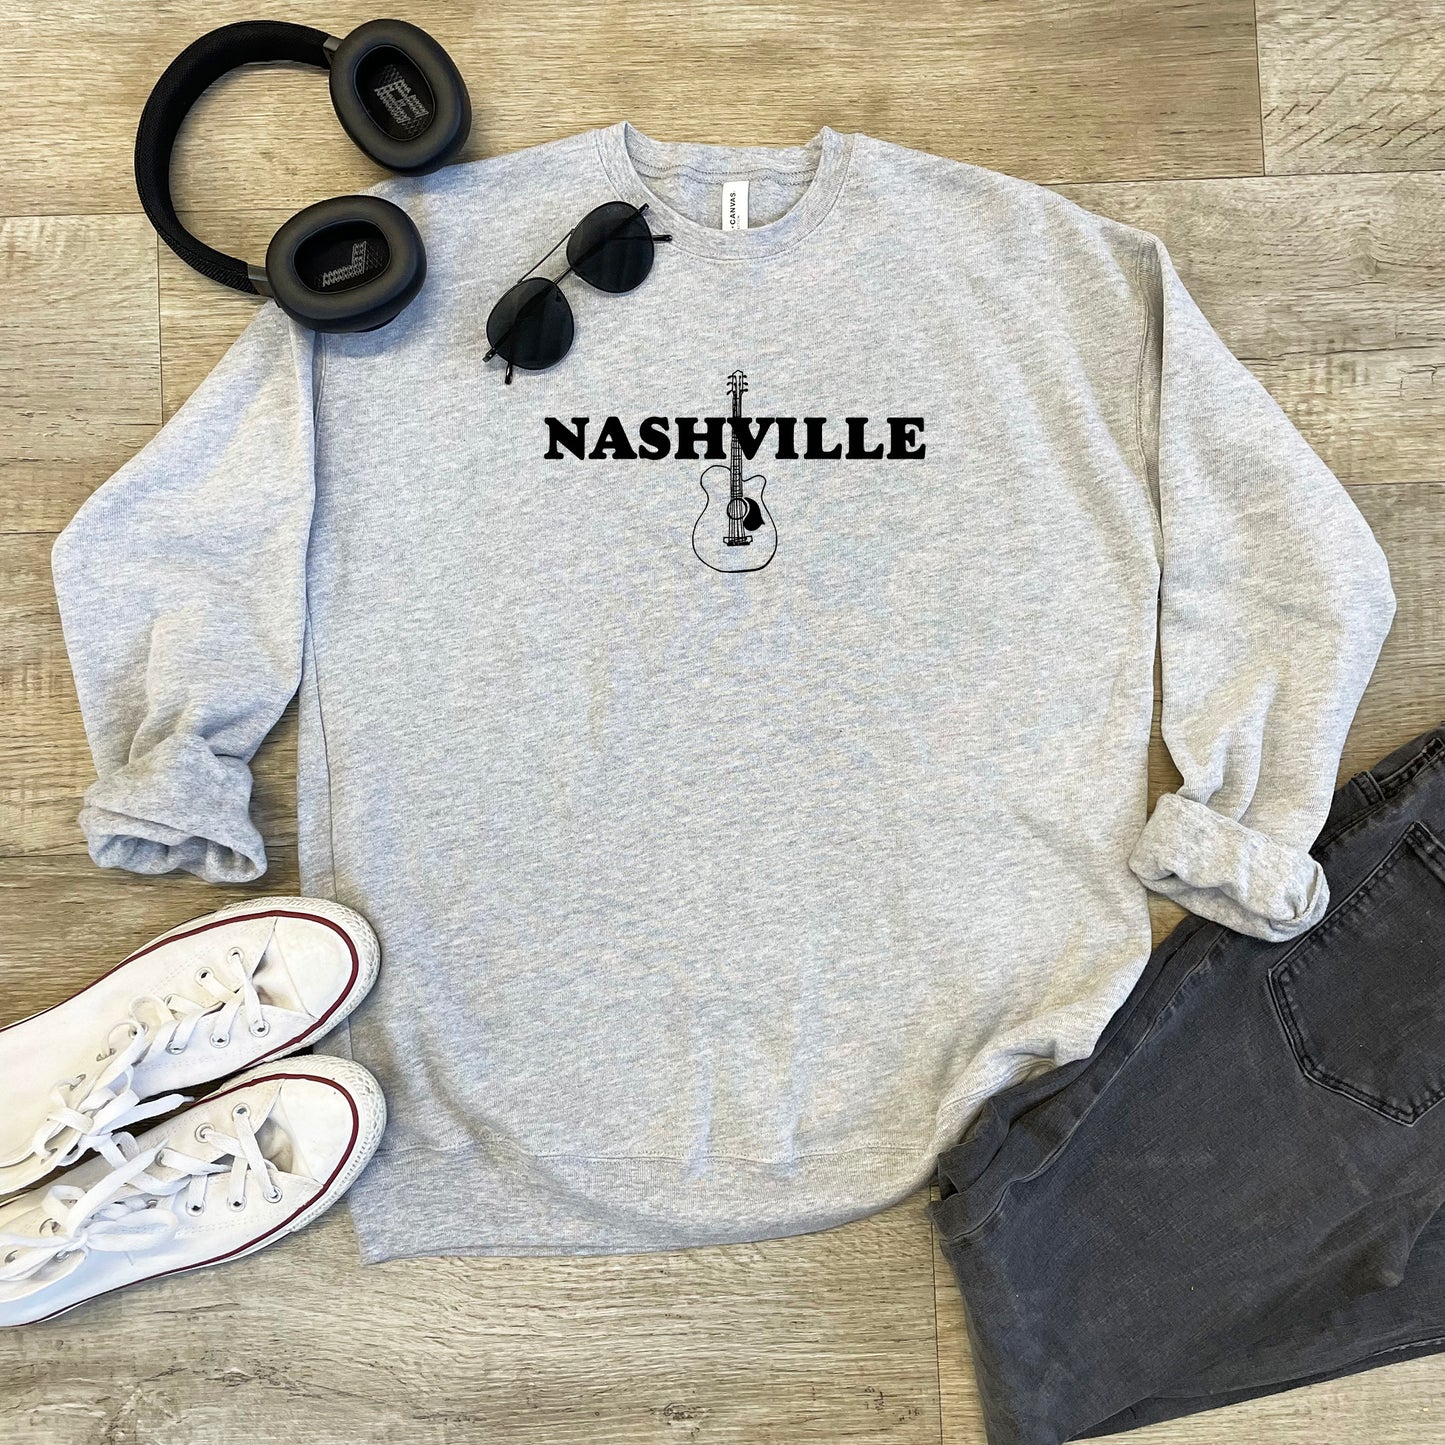 Nashville (TN) - Unisex Sweatshirt - Heather Gray or Dusty Blue